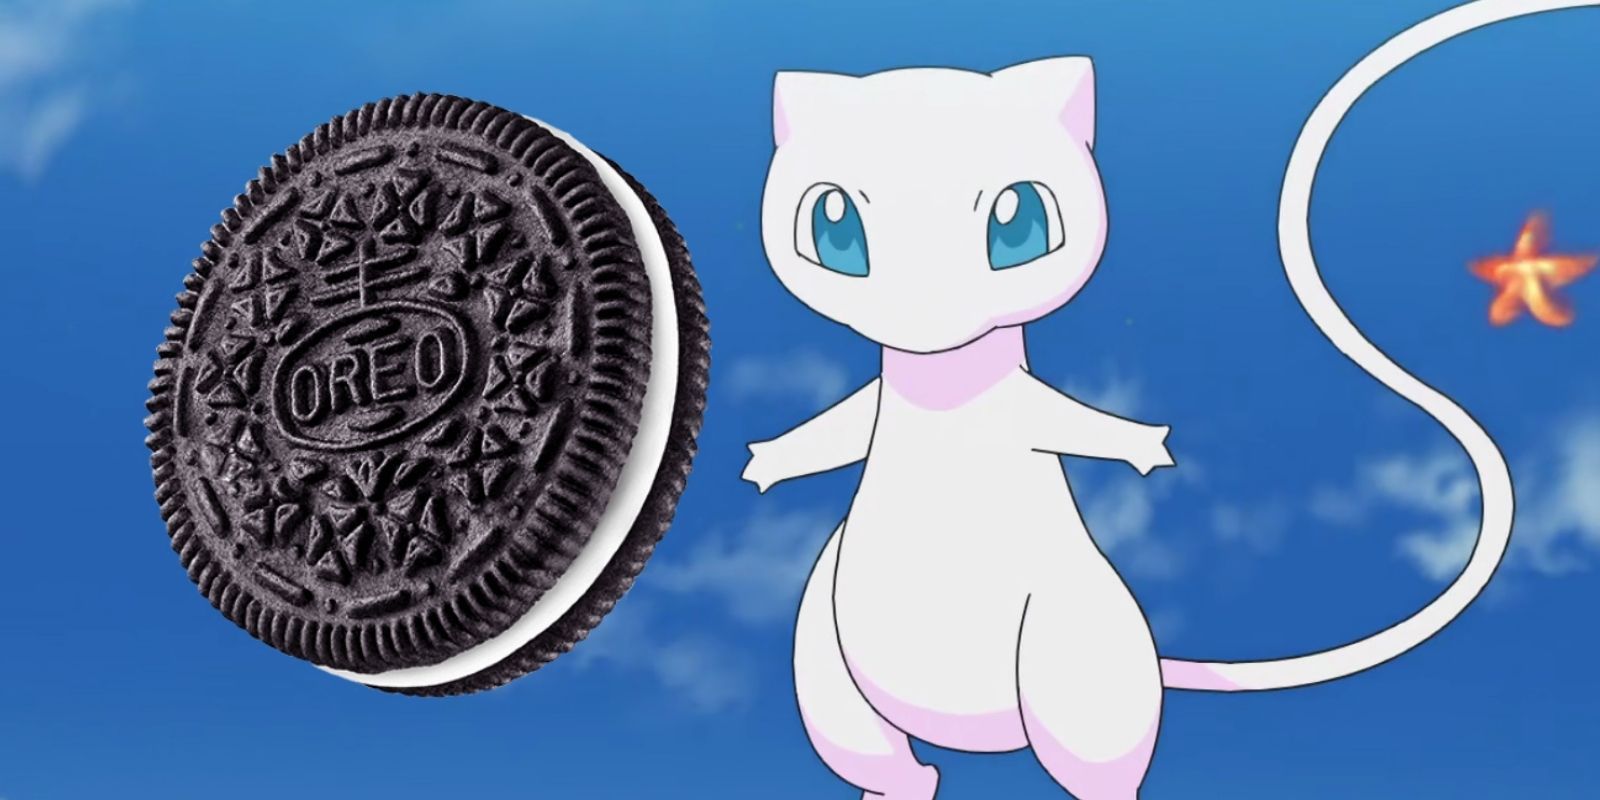 Mythic Pokemon Mew floating alongside a chocolate Oreo